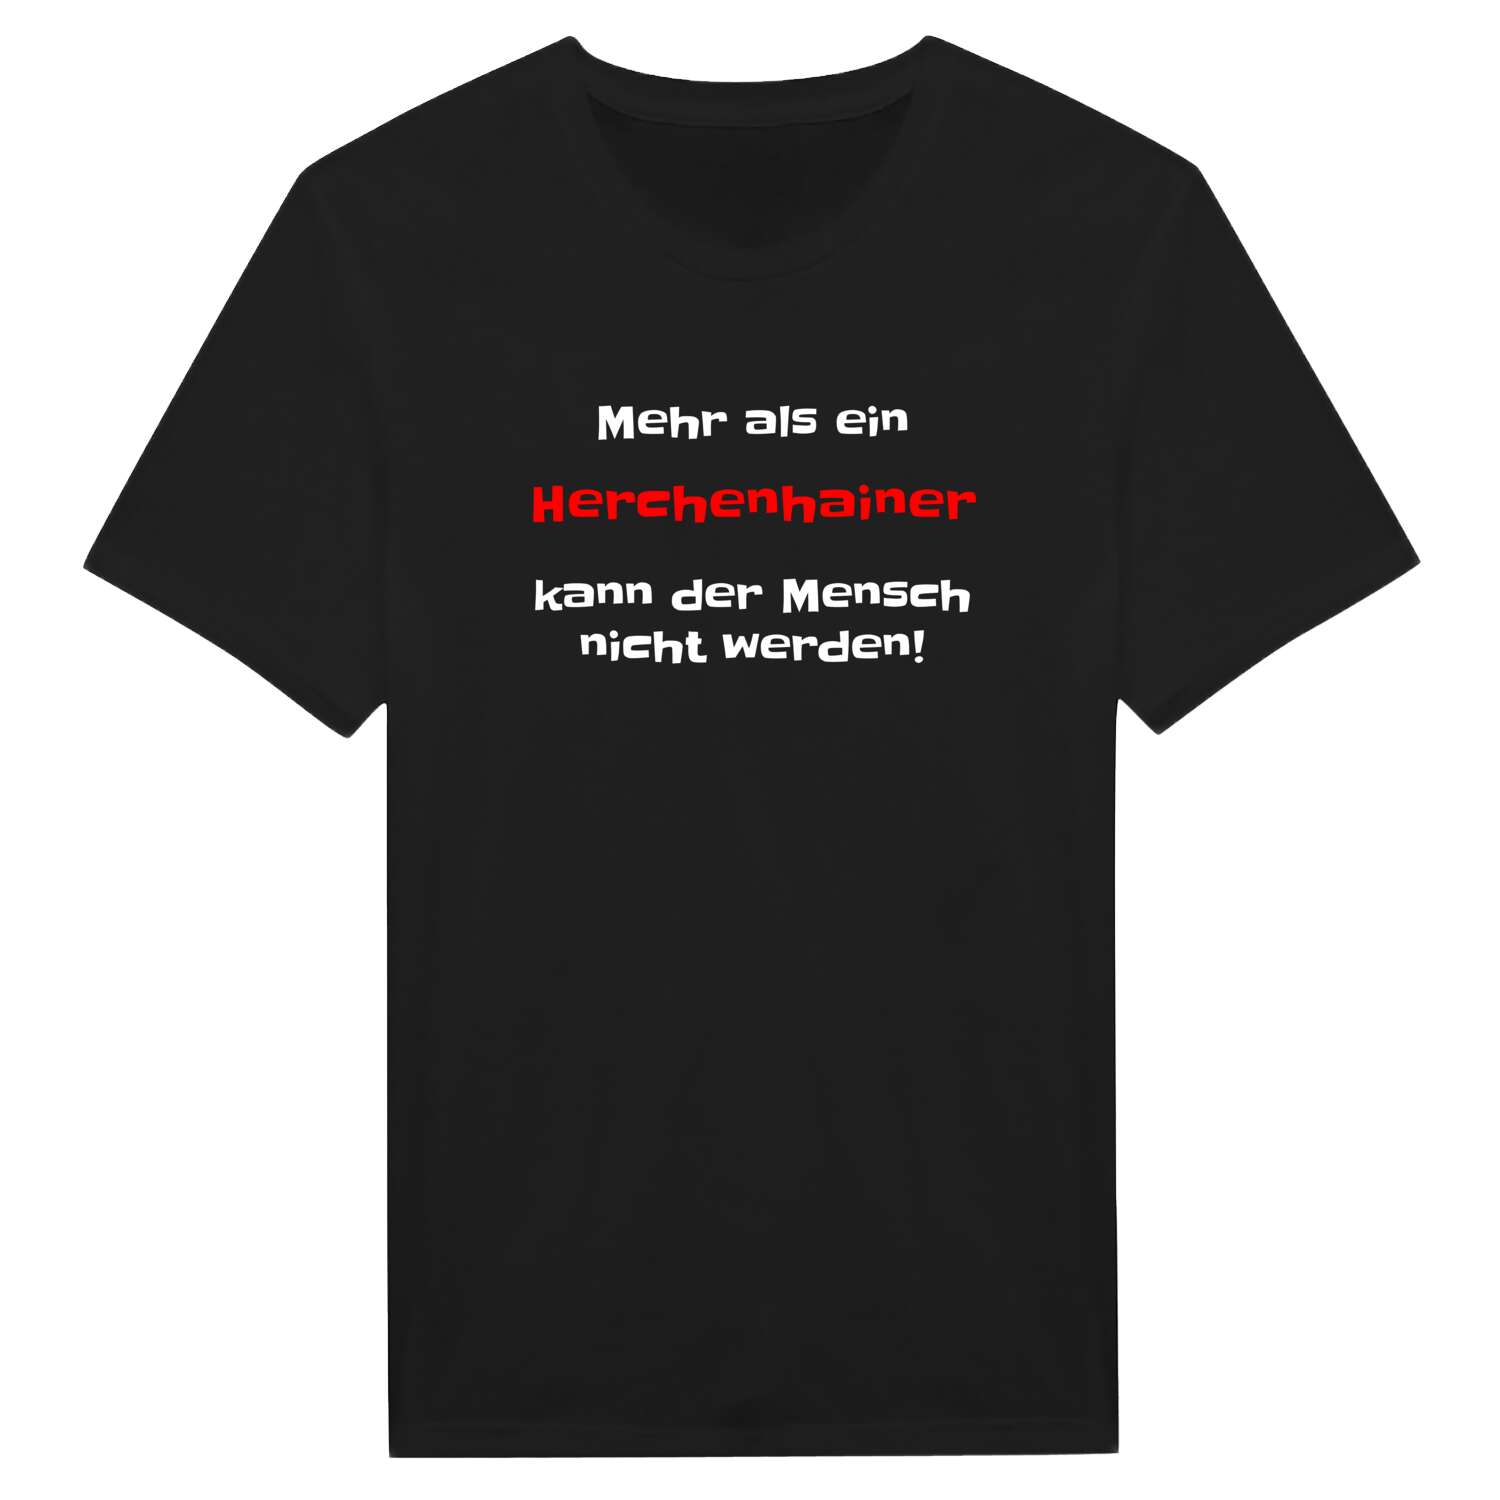 Herchenhain T-Shirt »Mehr als ein«